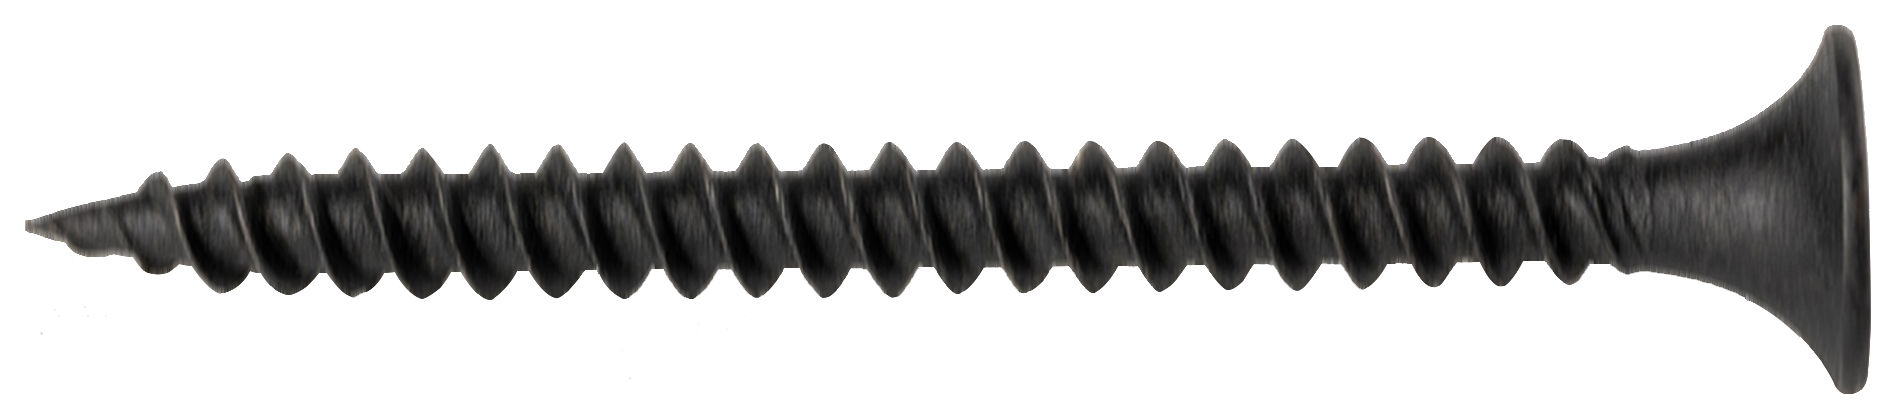 Wickes Fine Thread Black Phosphated Plasterboard Screws - 42mm - Pack of 200